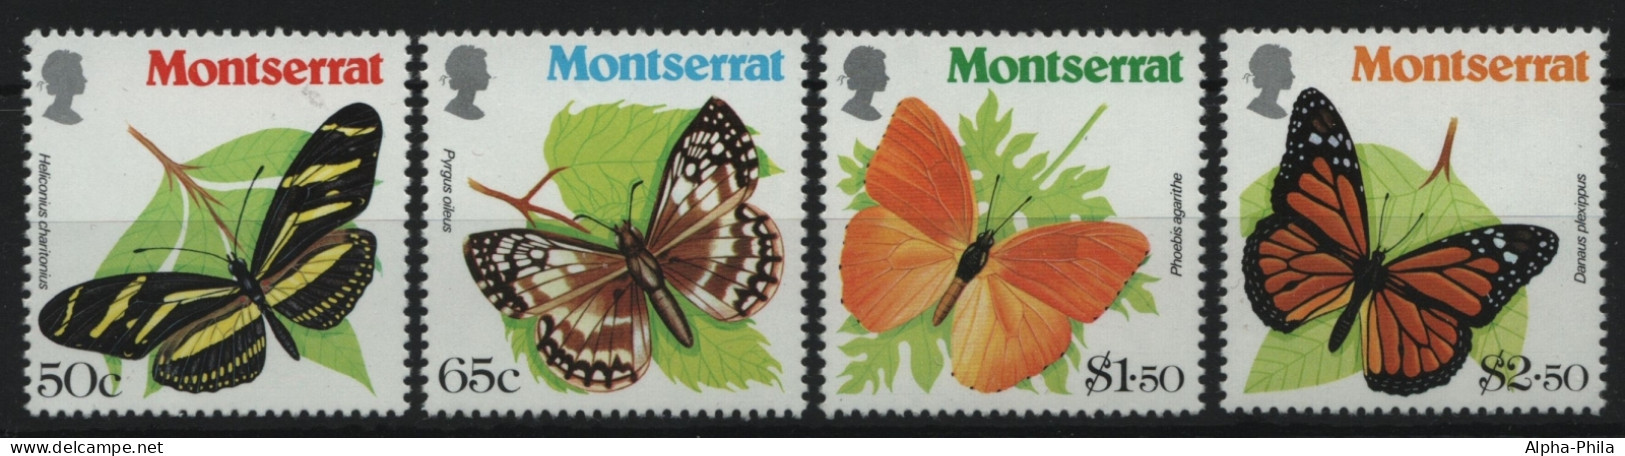 Montserrat 1981 - Mi-Nr. 441-444 ** - MNH - Schmetterlinge / Butterflies - Montserrat